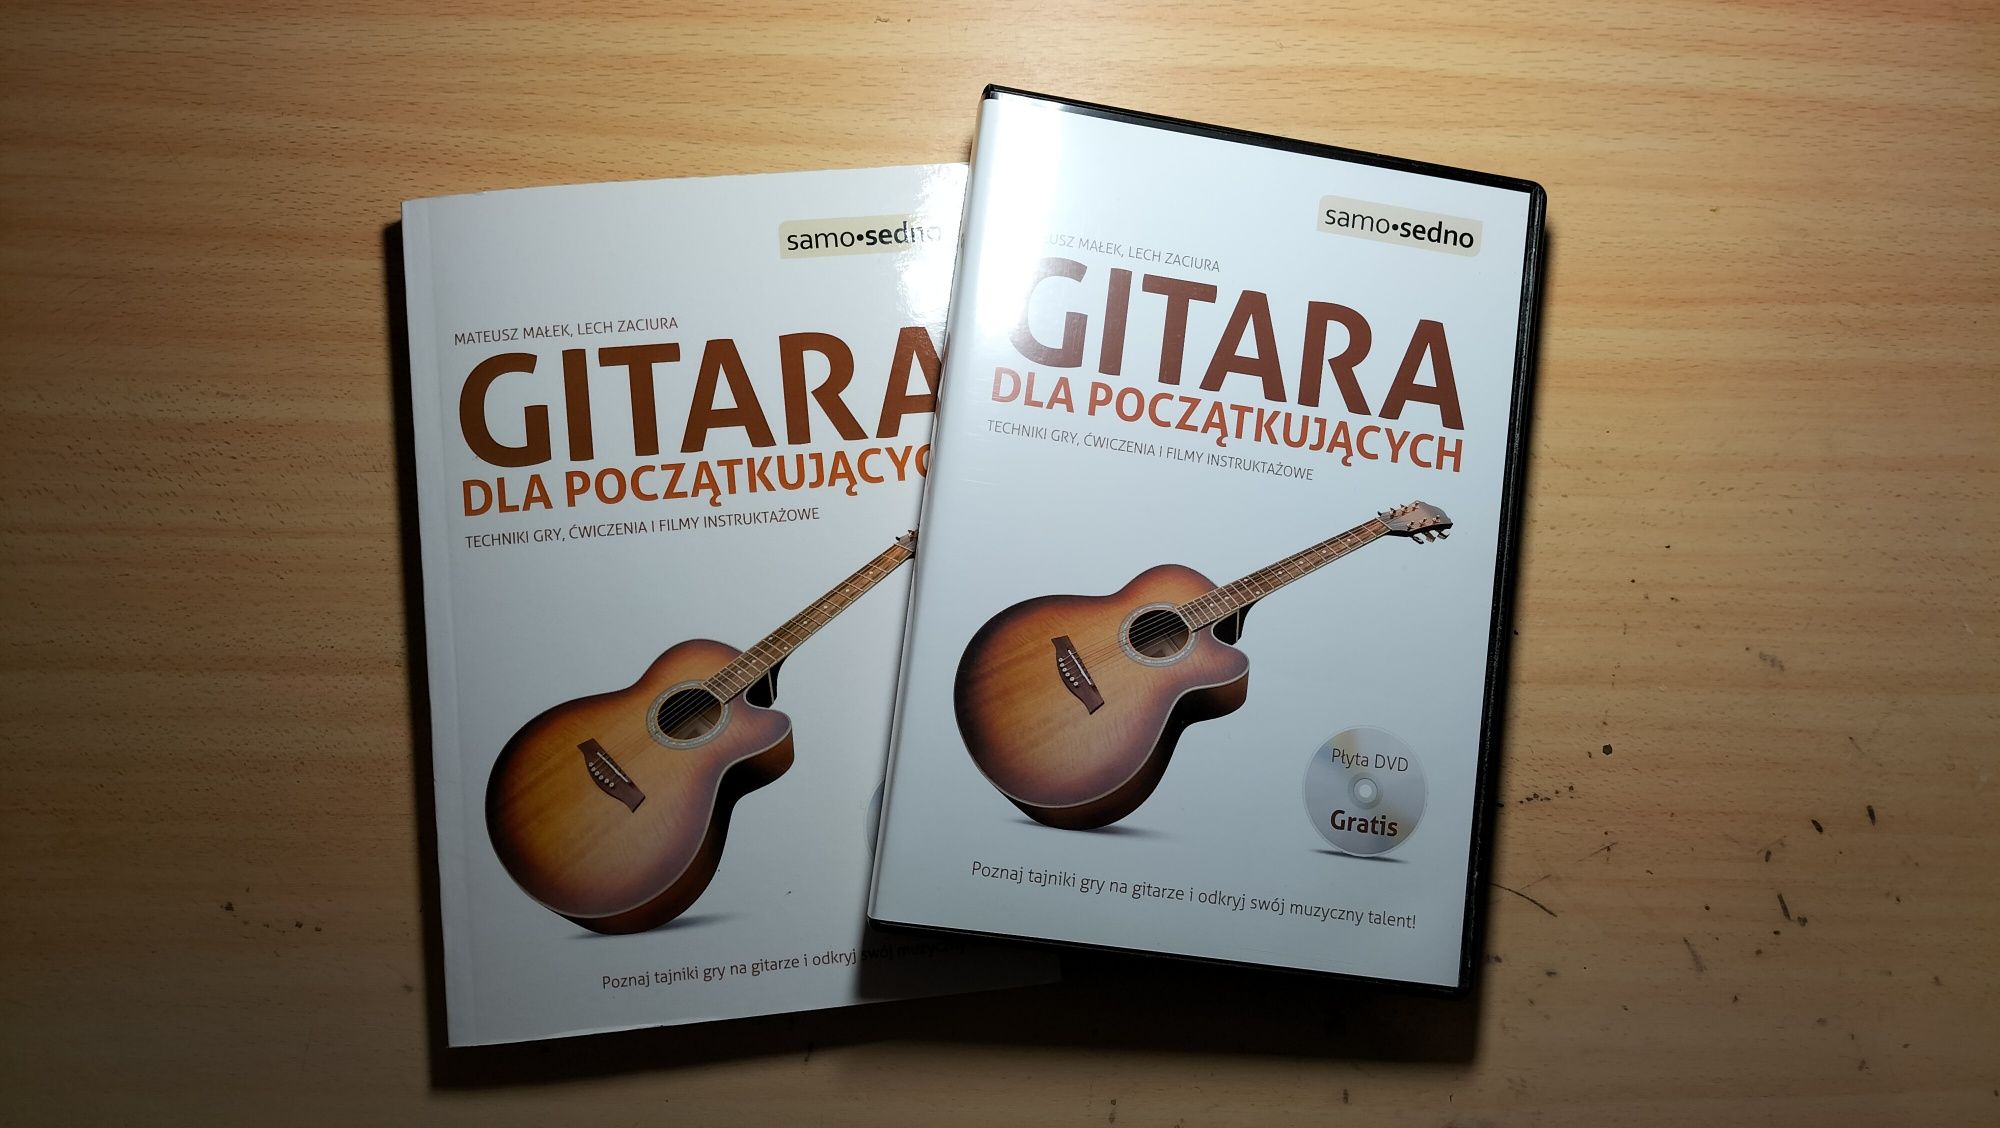 Zestaw Gitara dla początkujących 2w1 książka+płyta dvd